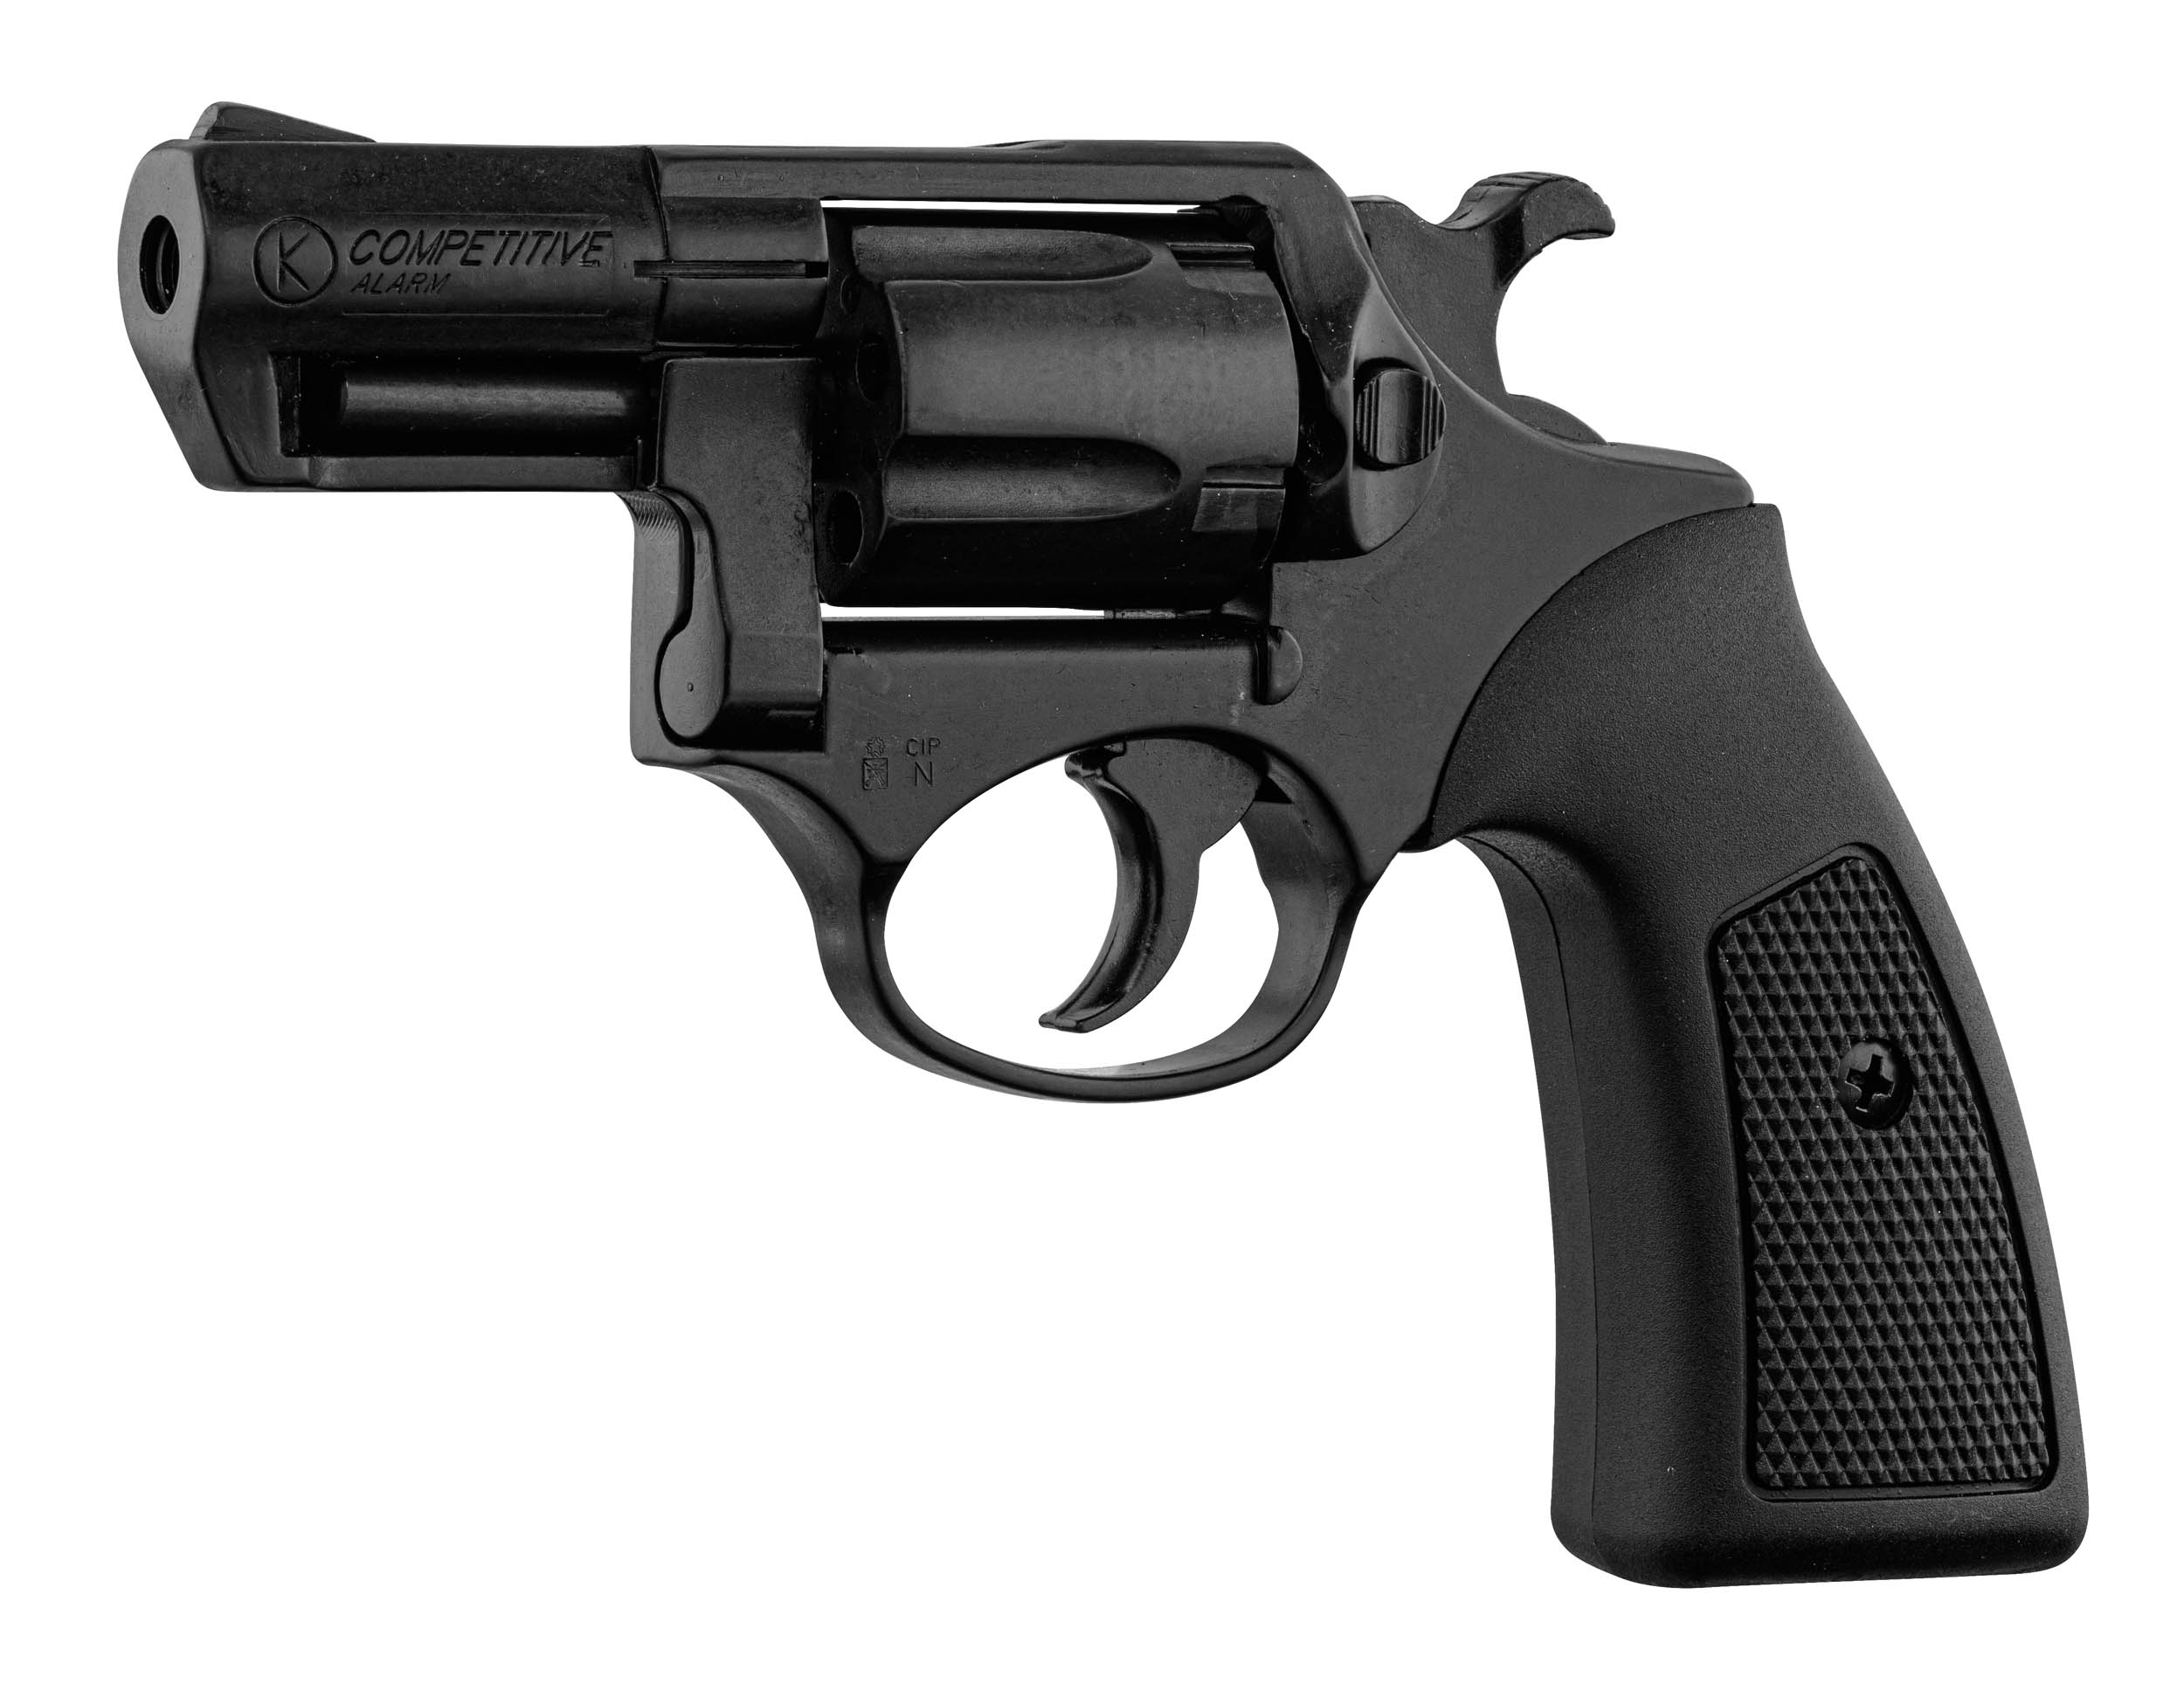 Pistolet police metal Gris Argent 17 cm, amorces 8 coups - Jouet